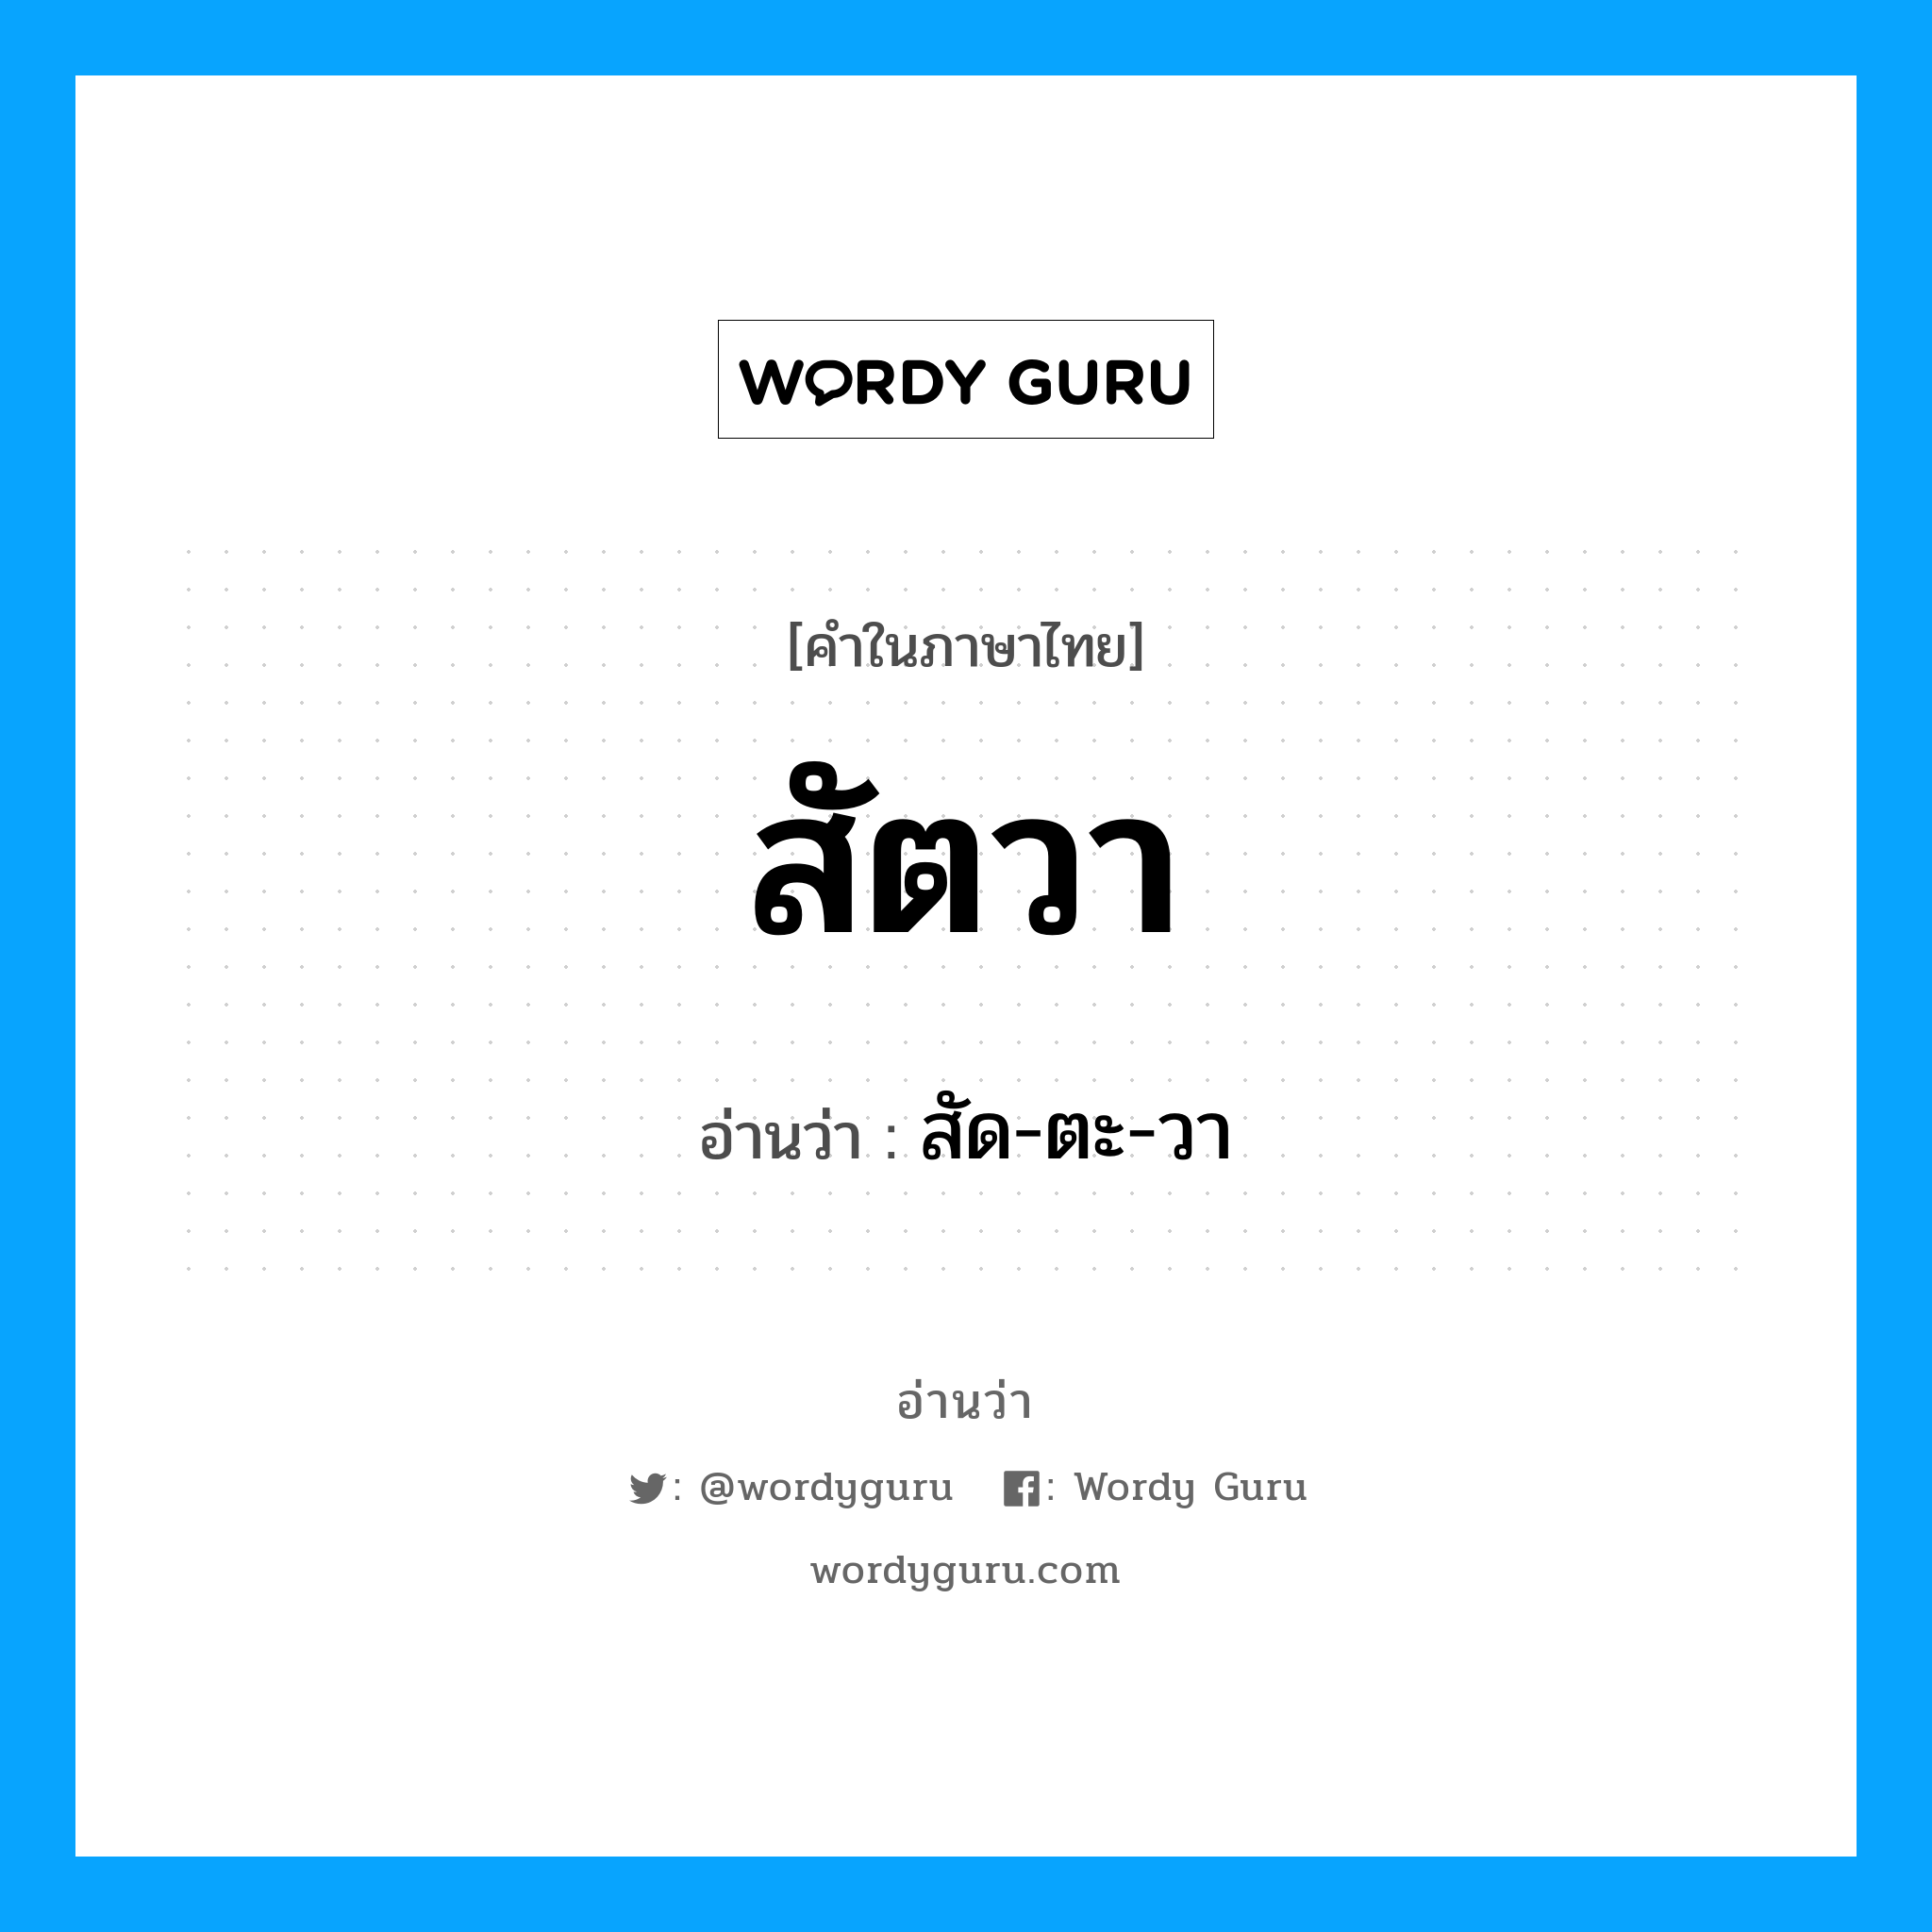 สัด-ตะ-วา เป็นคำอ่านของคำไหน?, คำในภาษาไทย สัด-ตะ-วา อ่านว่า สัตวา